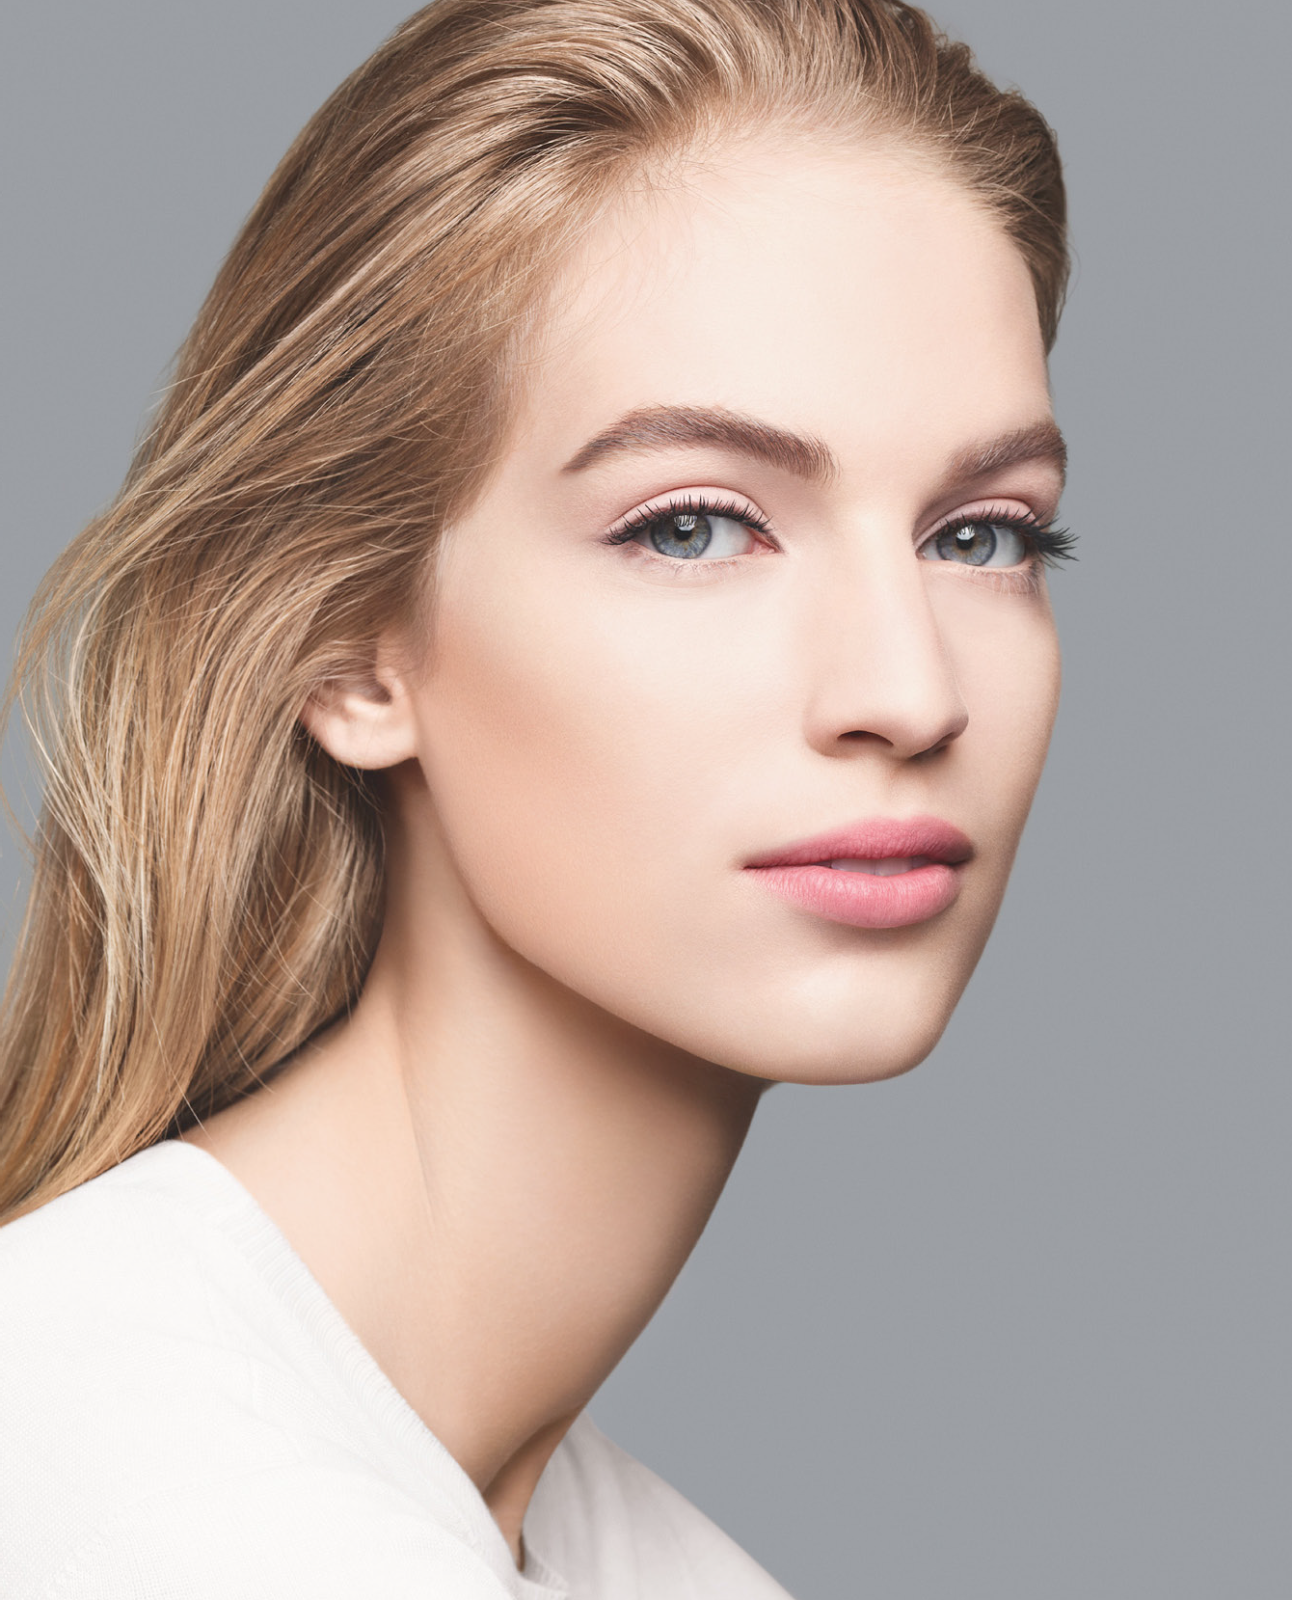 Лицо 2015. Карли Клосс нависшие веки. Красивый естественный макияж. Классическое лицо модели. Модельное лицо.